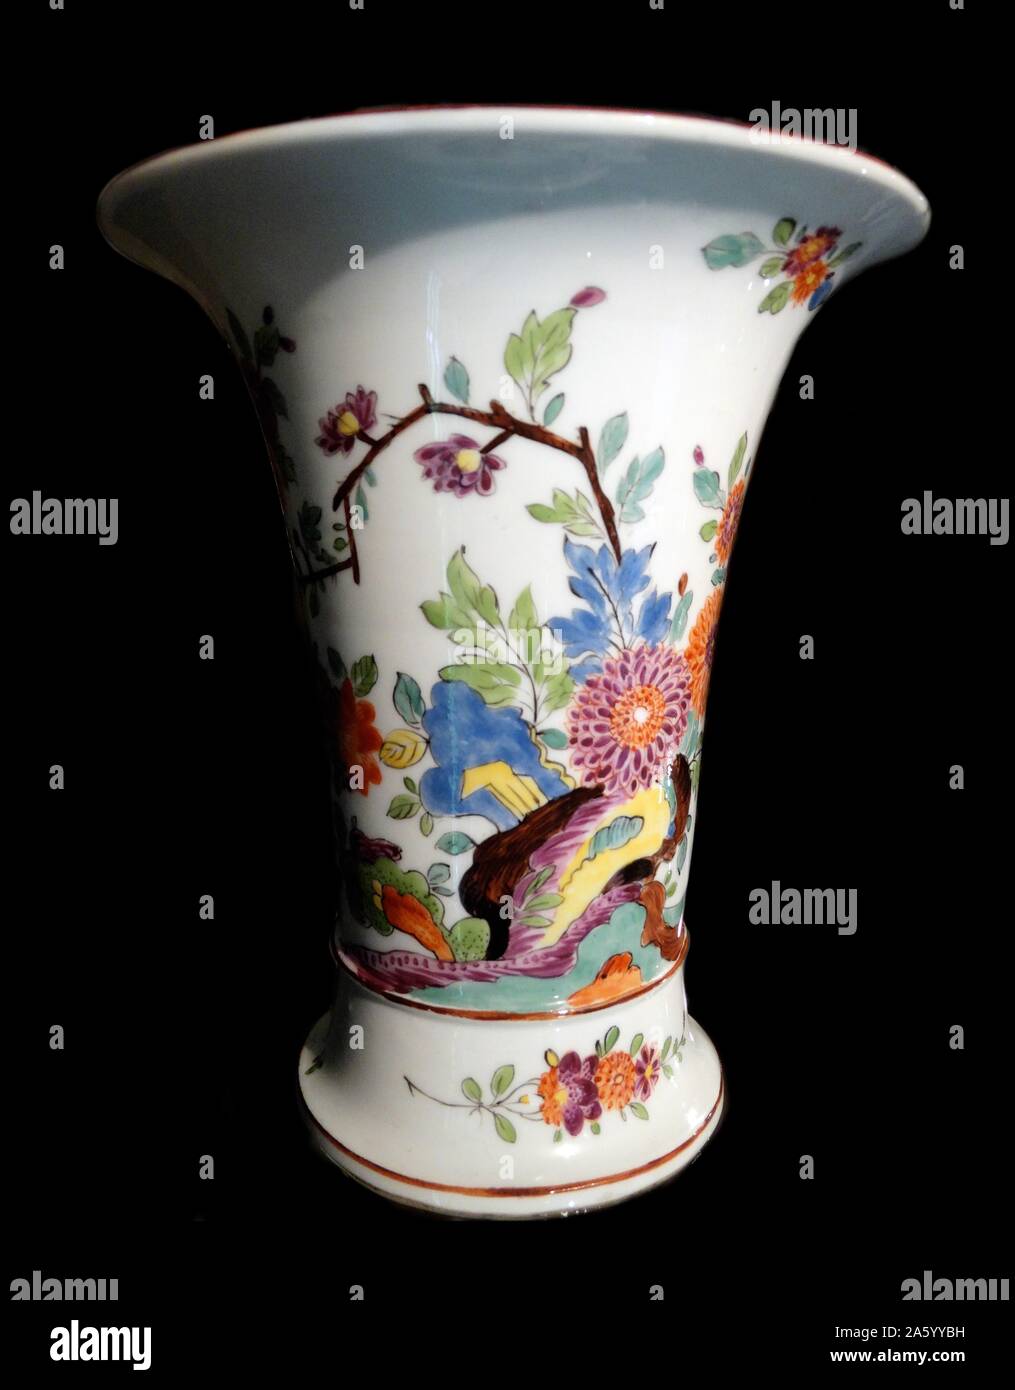 Vase allemand faite par l'usine de porcelaine de Meissen, Allemagne. Pâte à porcelaine, sur,1745 Banque D'Images